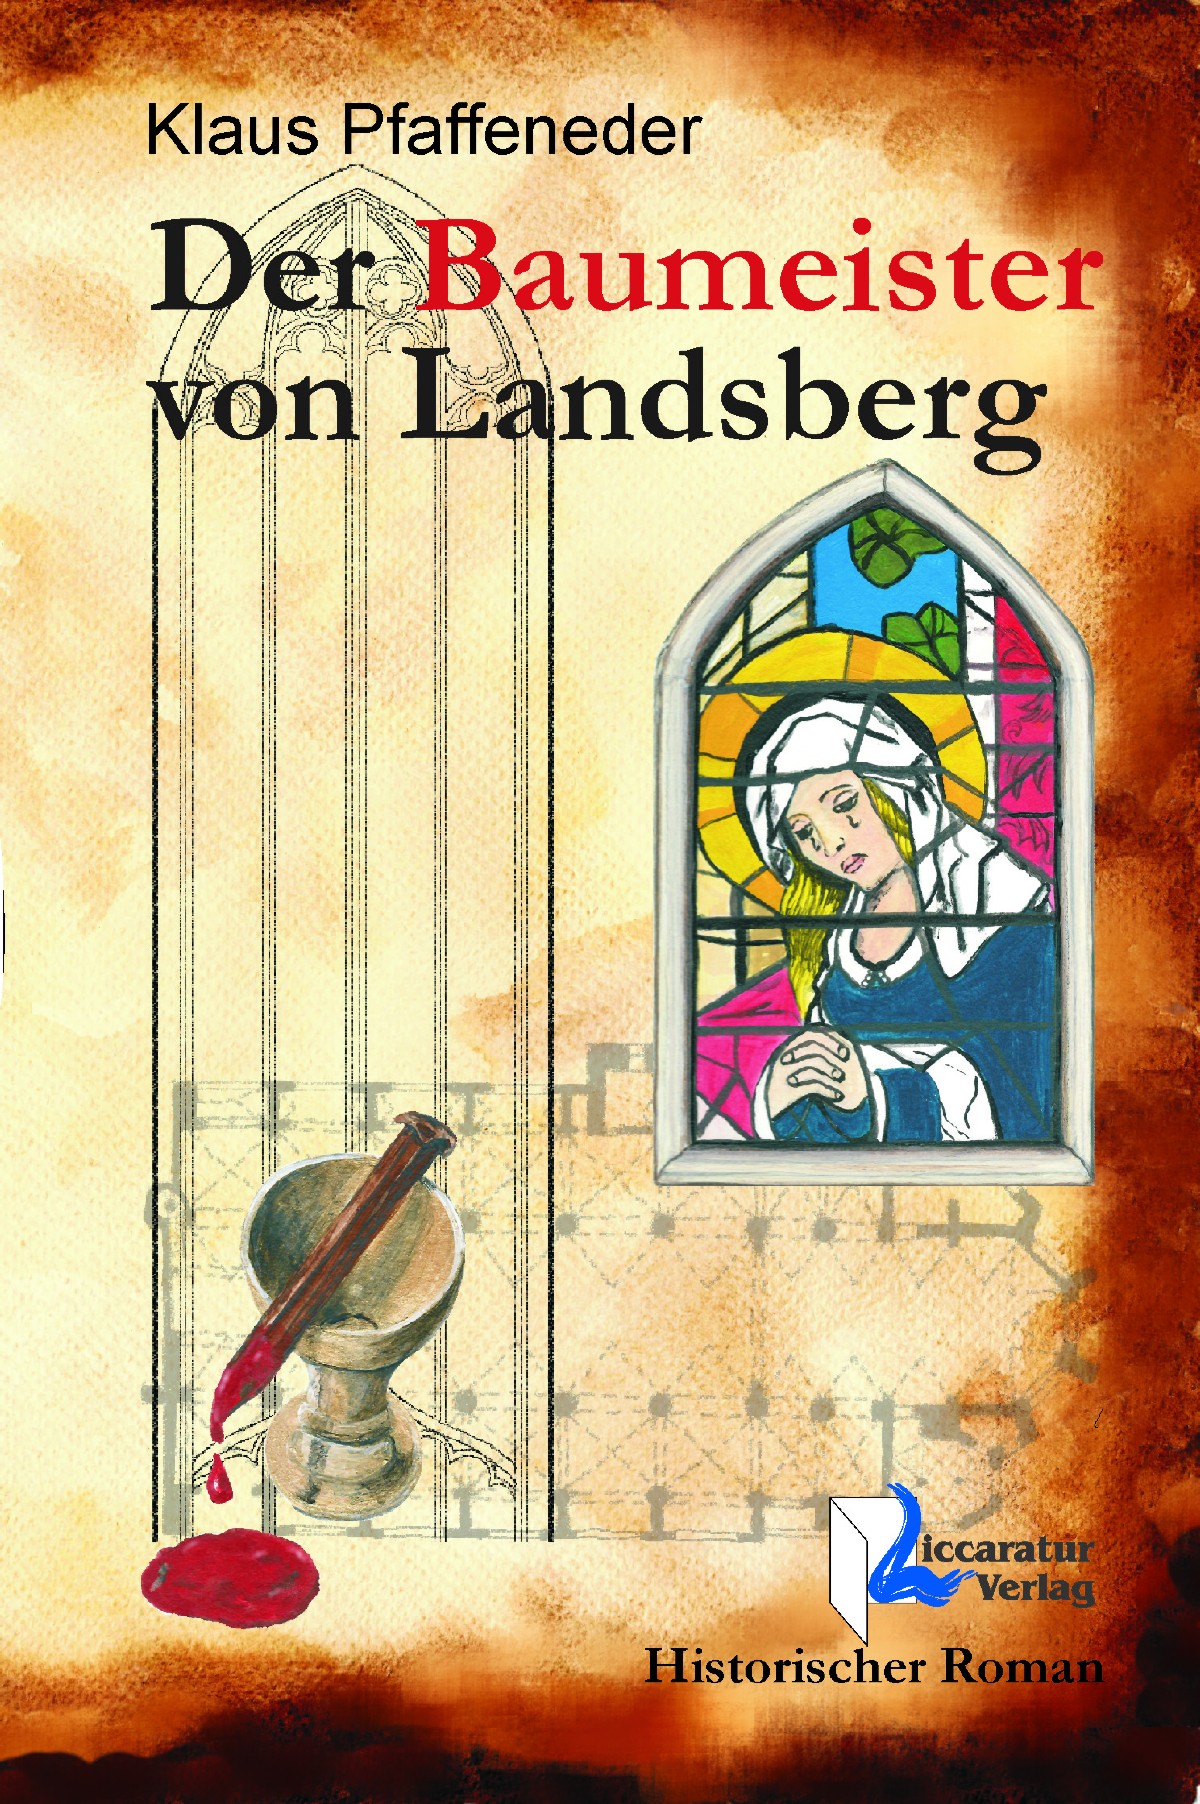 Covertitel "Der Baumeister von Landsberg"